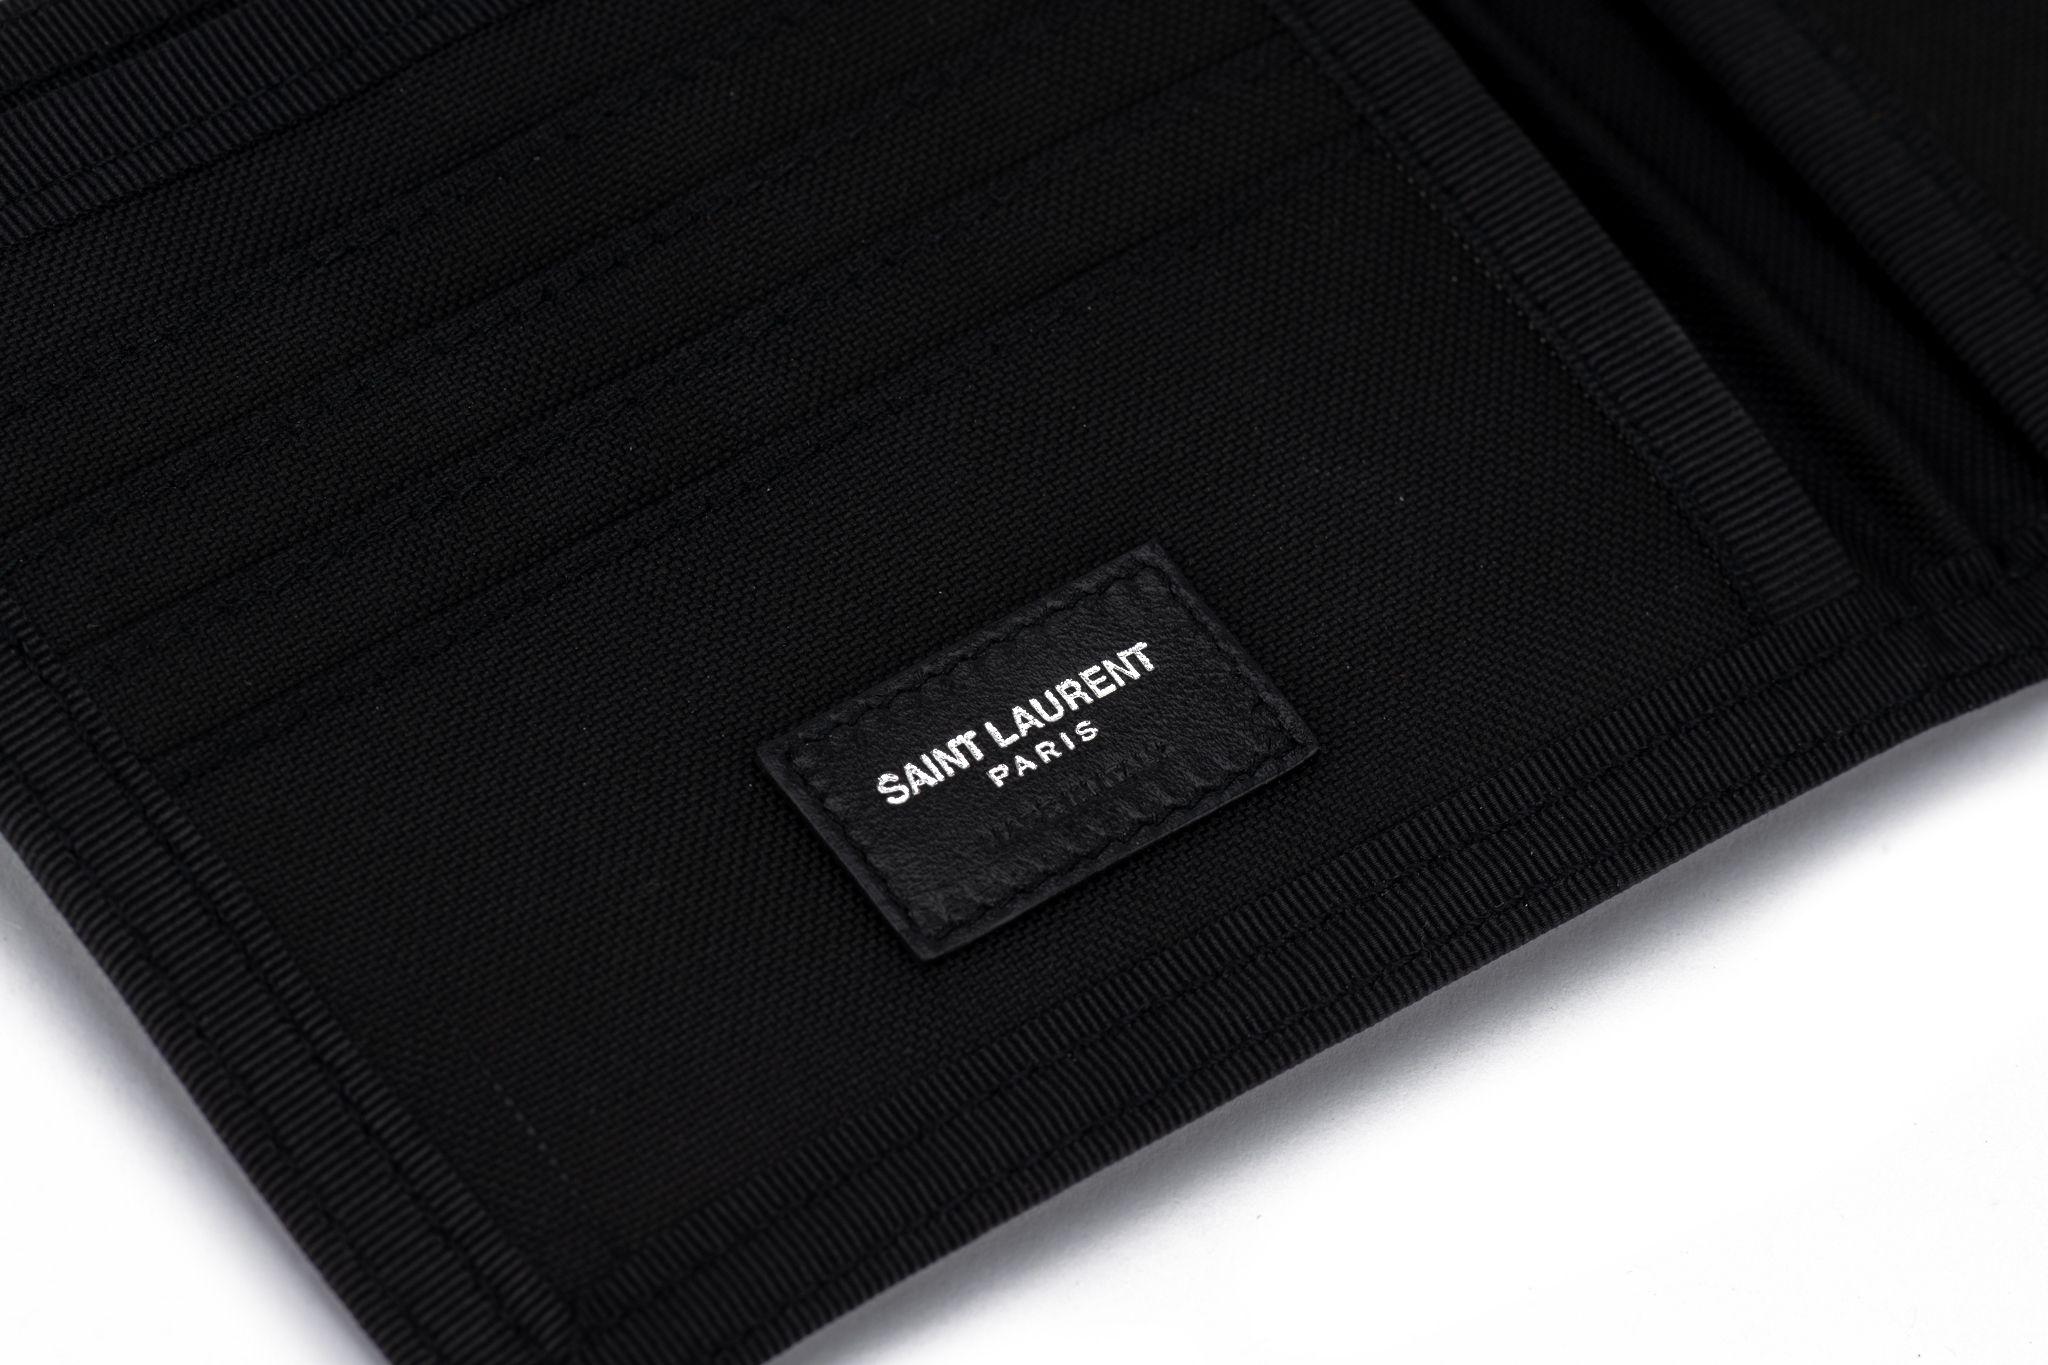 YSL neue schwarze Canvas Palme Brieftasche mit mehreren Taschen und Schlitzen .
Kommt mit Originalverpackung.